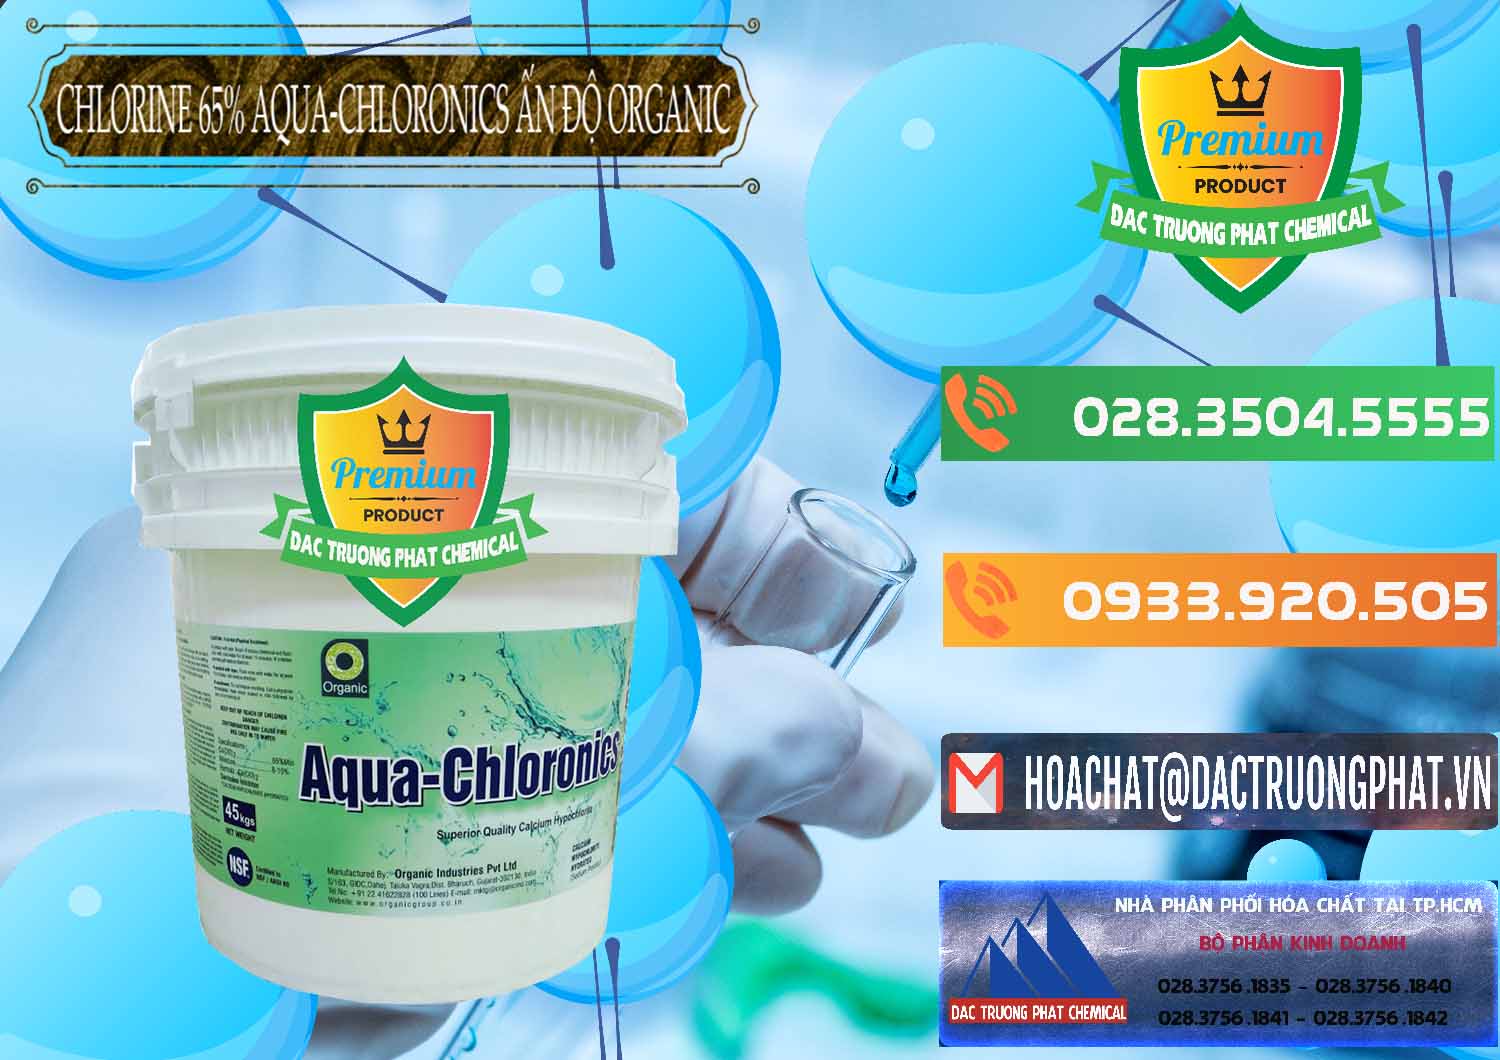 Cty bán & phân phối Chlorine – Clorin 65% Aqua-Chloronics Ấn Độ Organic India - 0210 - Công ty phân phối và cung cấp hóa chất tại TP.HCM - hoachatxulynuoc.com.vn